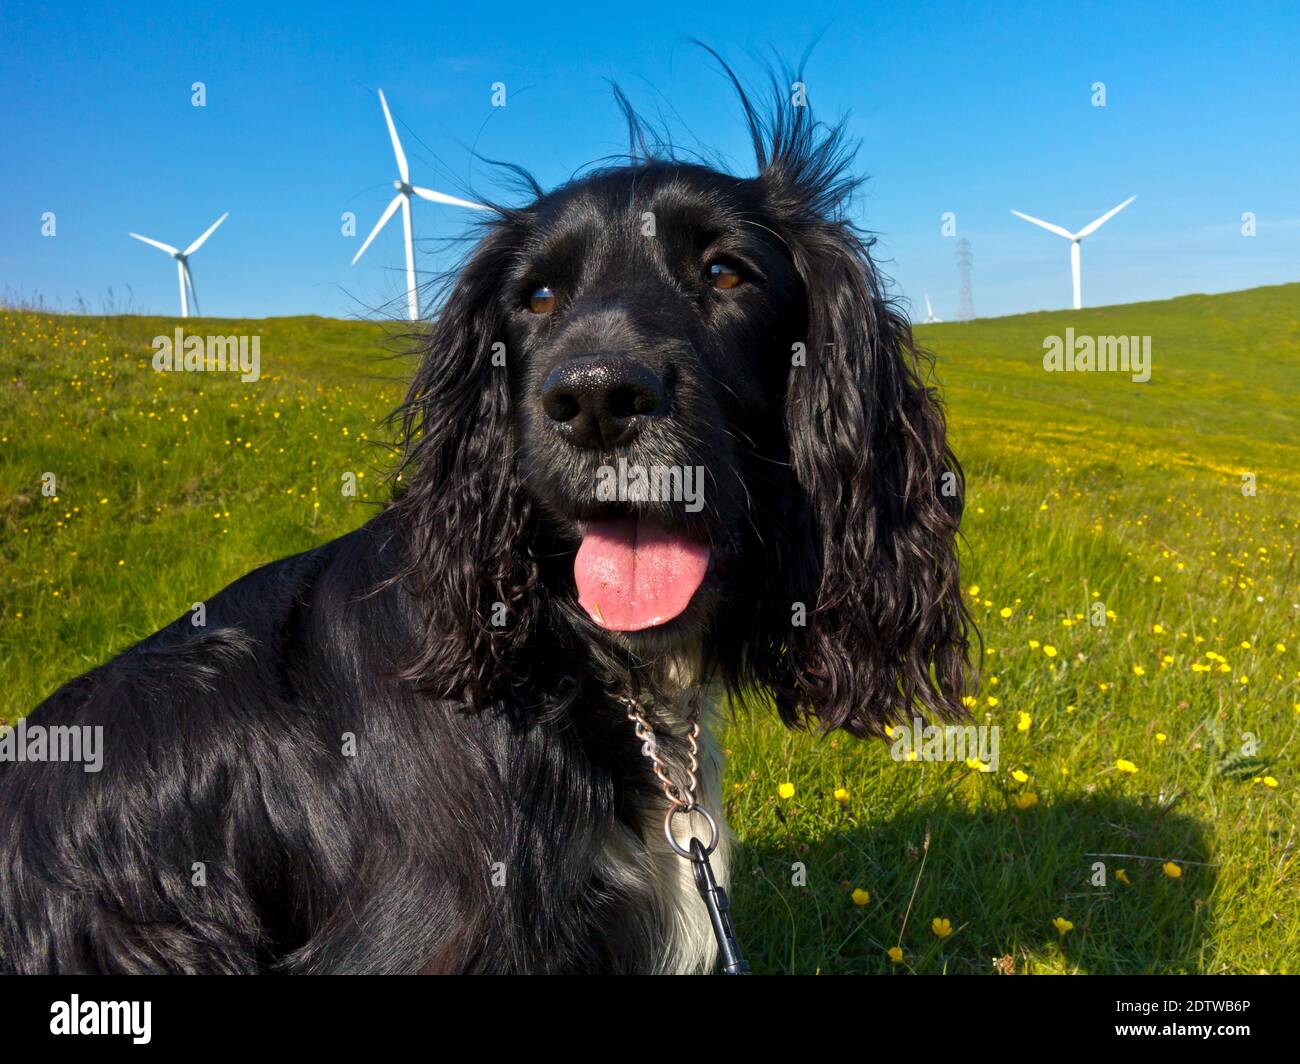 El perro de trabajo de cocker spaniel con pelo negro y pecho blanco en el campo jadeando en un caluroso día de verano con turbinas de viento en el fondo. Foto de stock